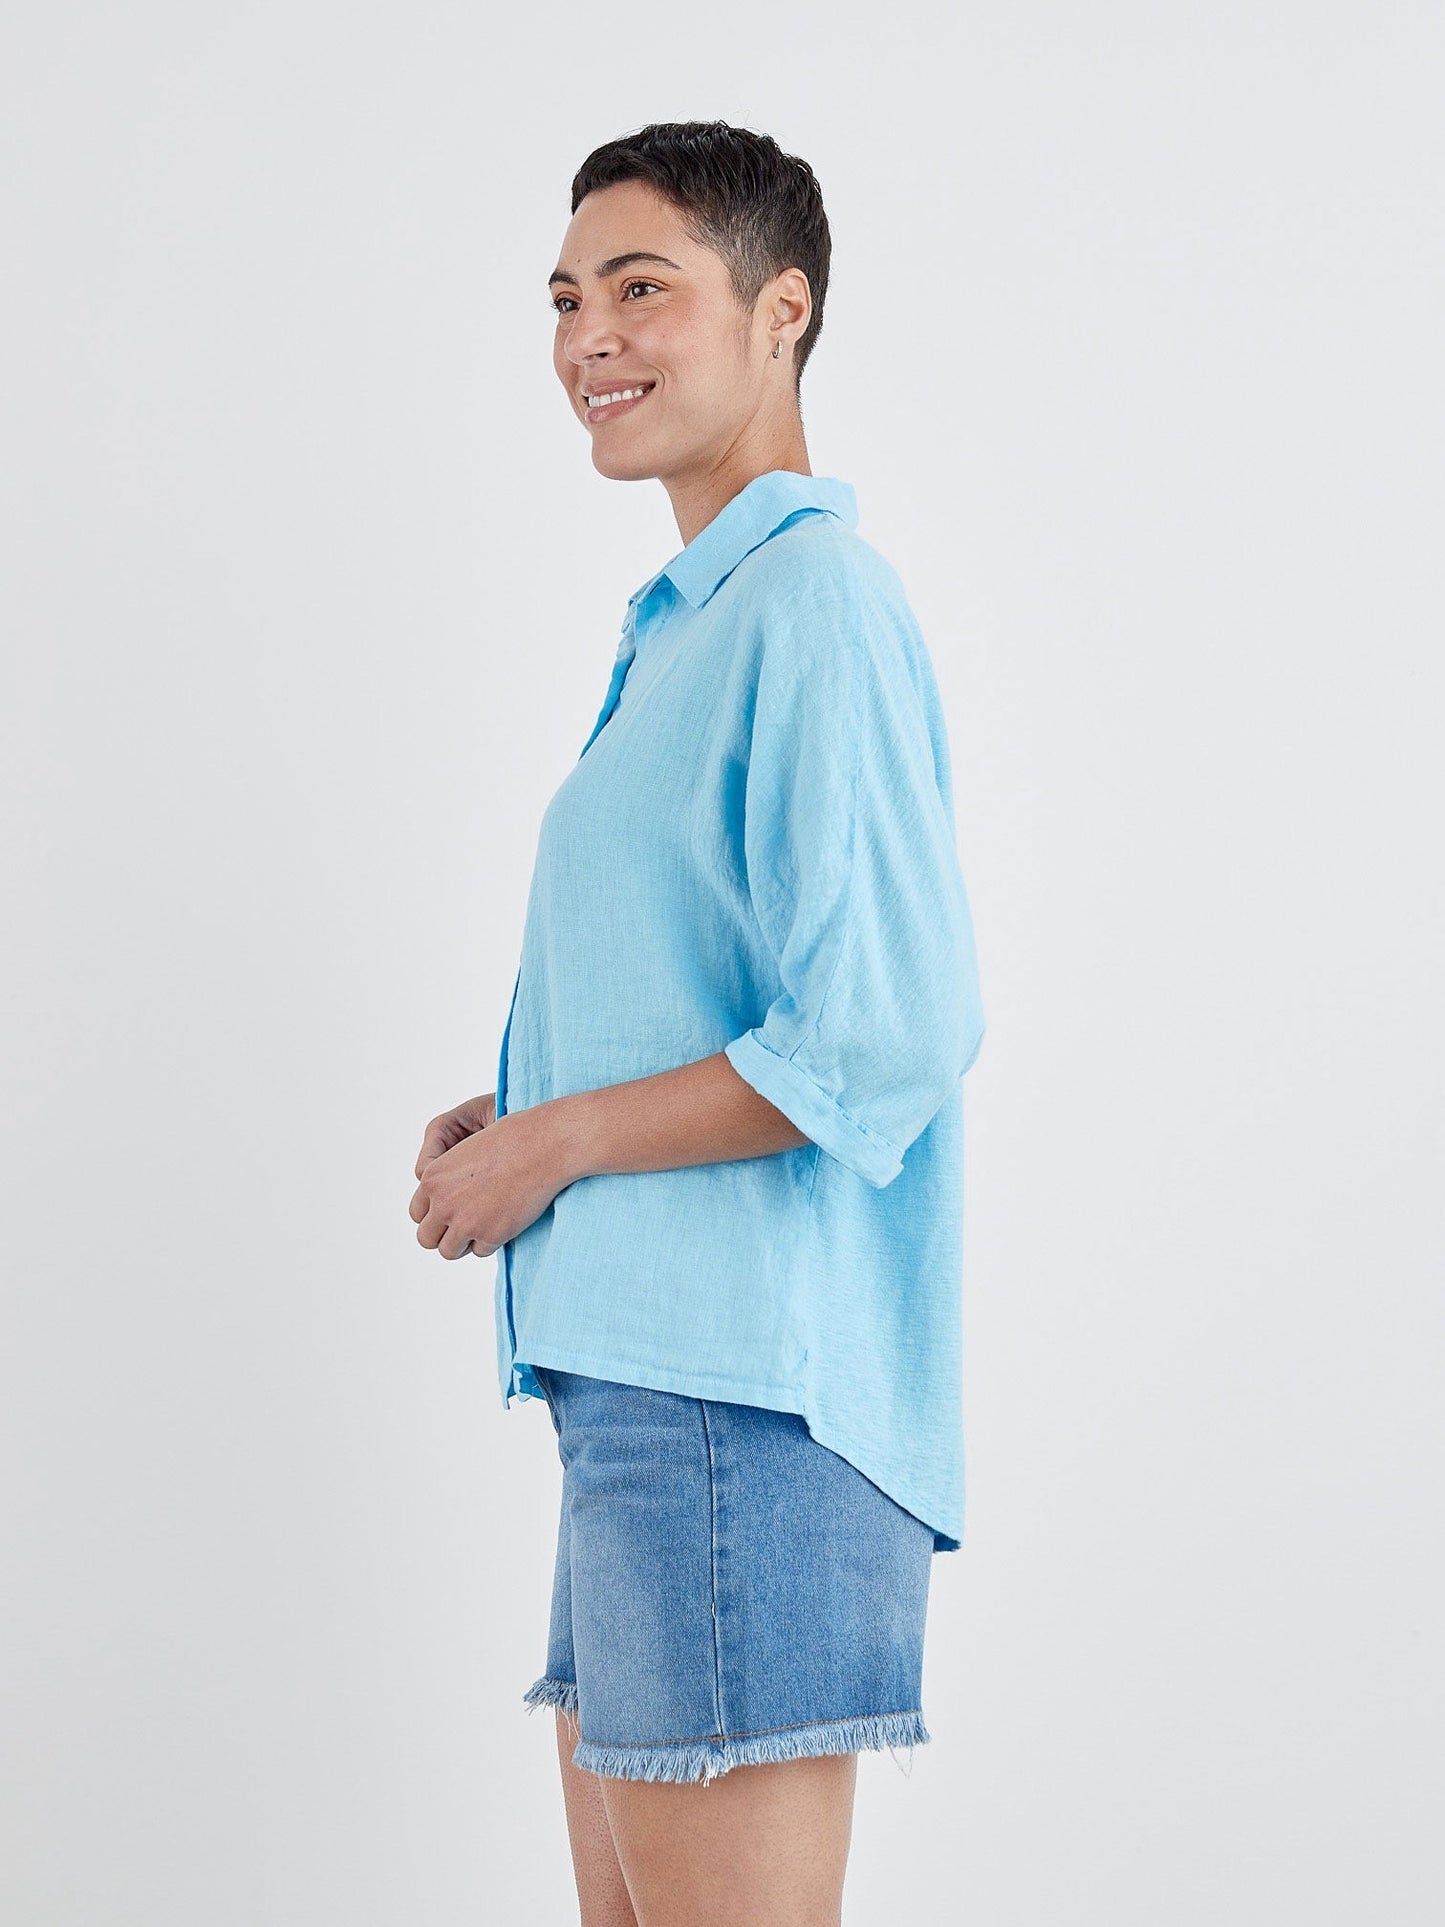 Dolman Sleeve Shirt in Linen Jersey by Cut-Loose